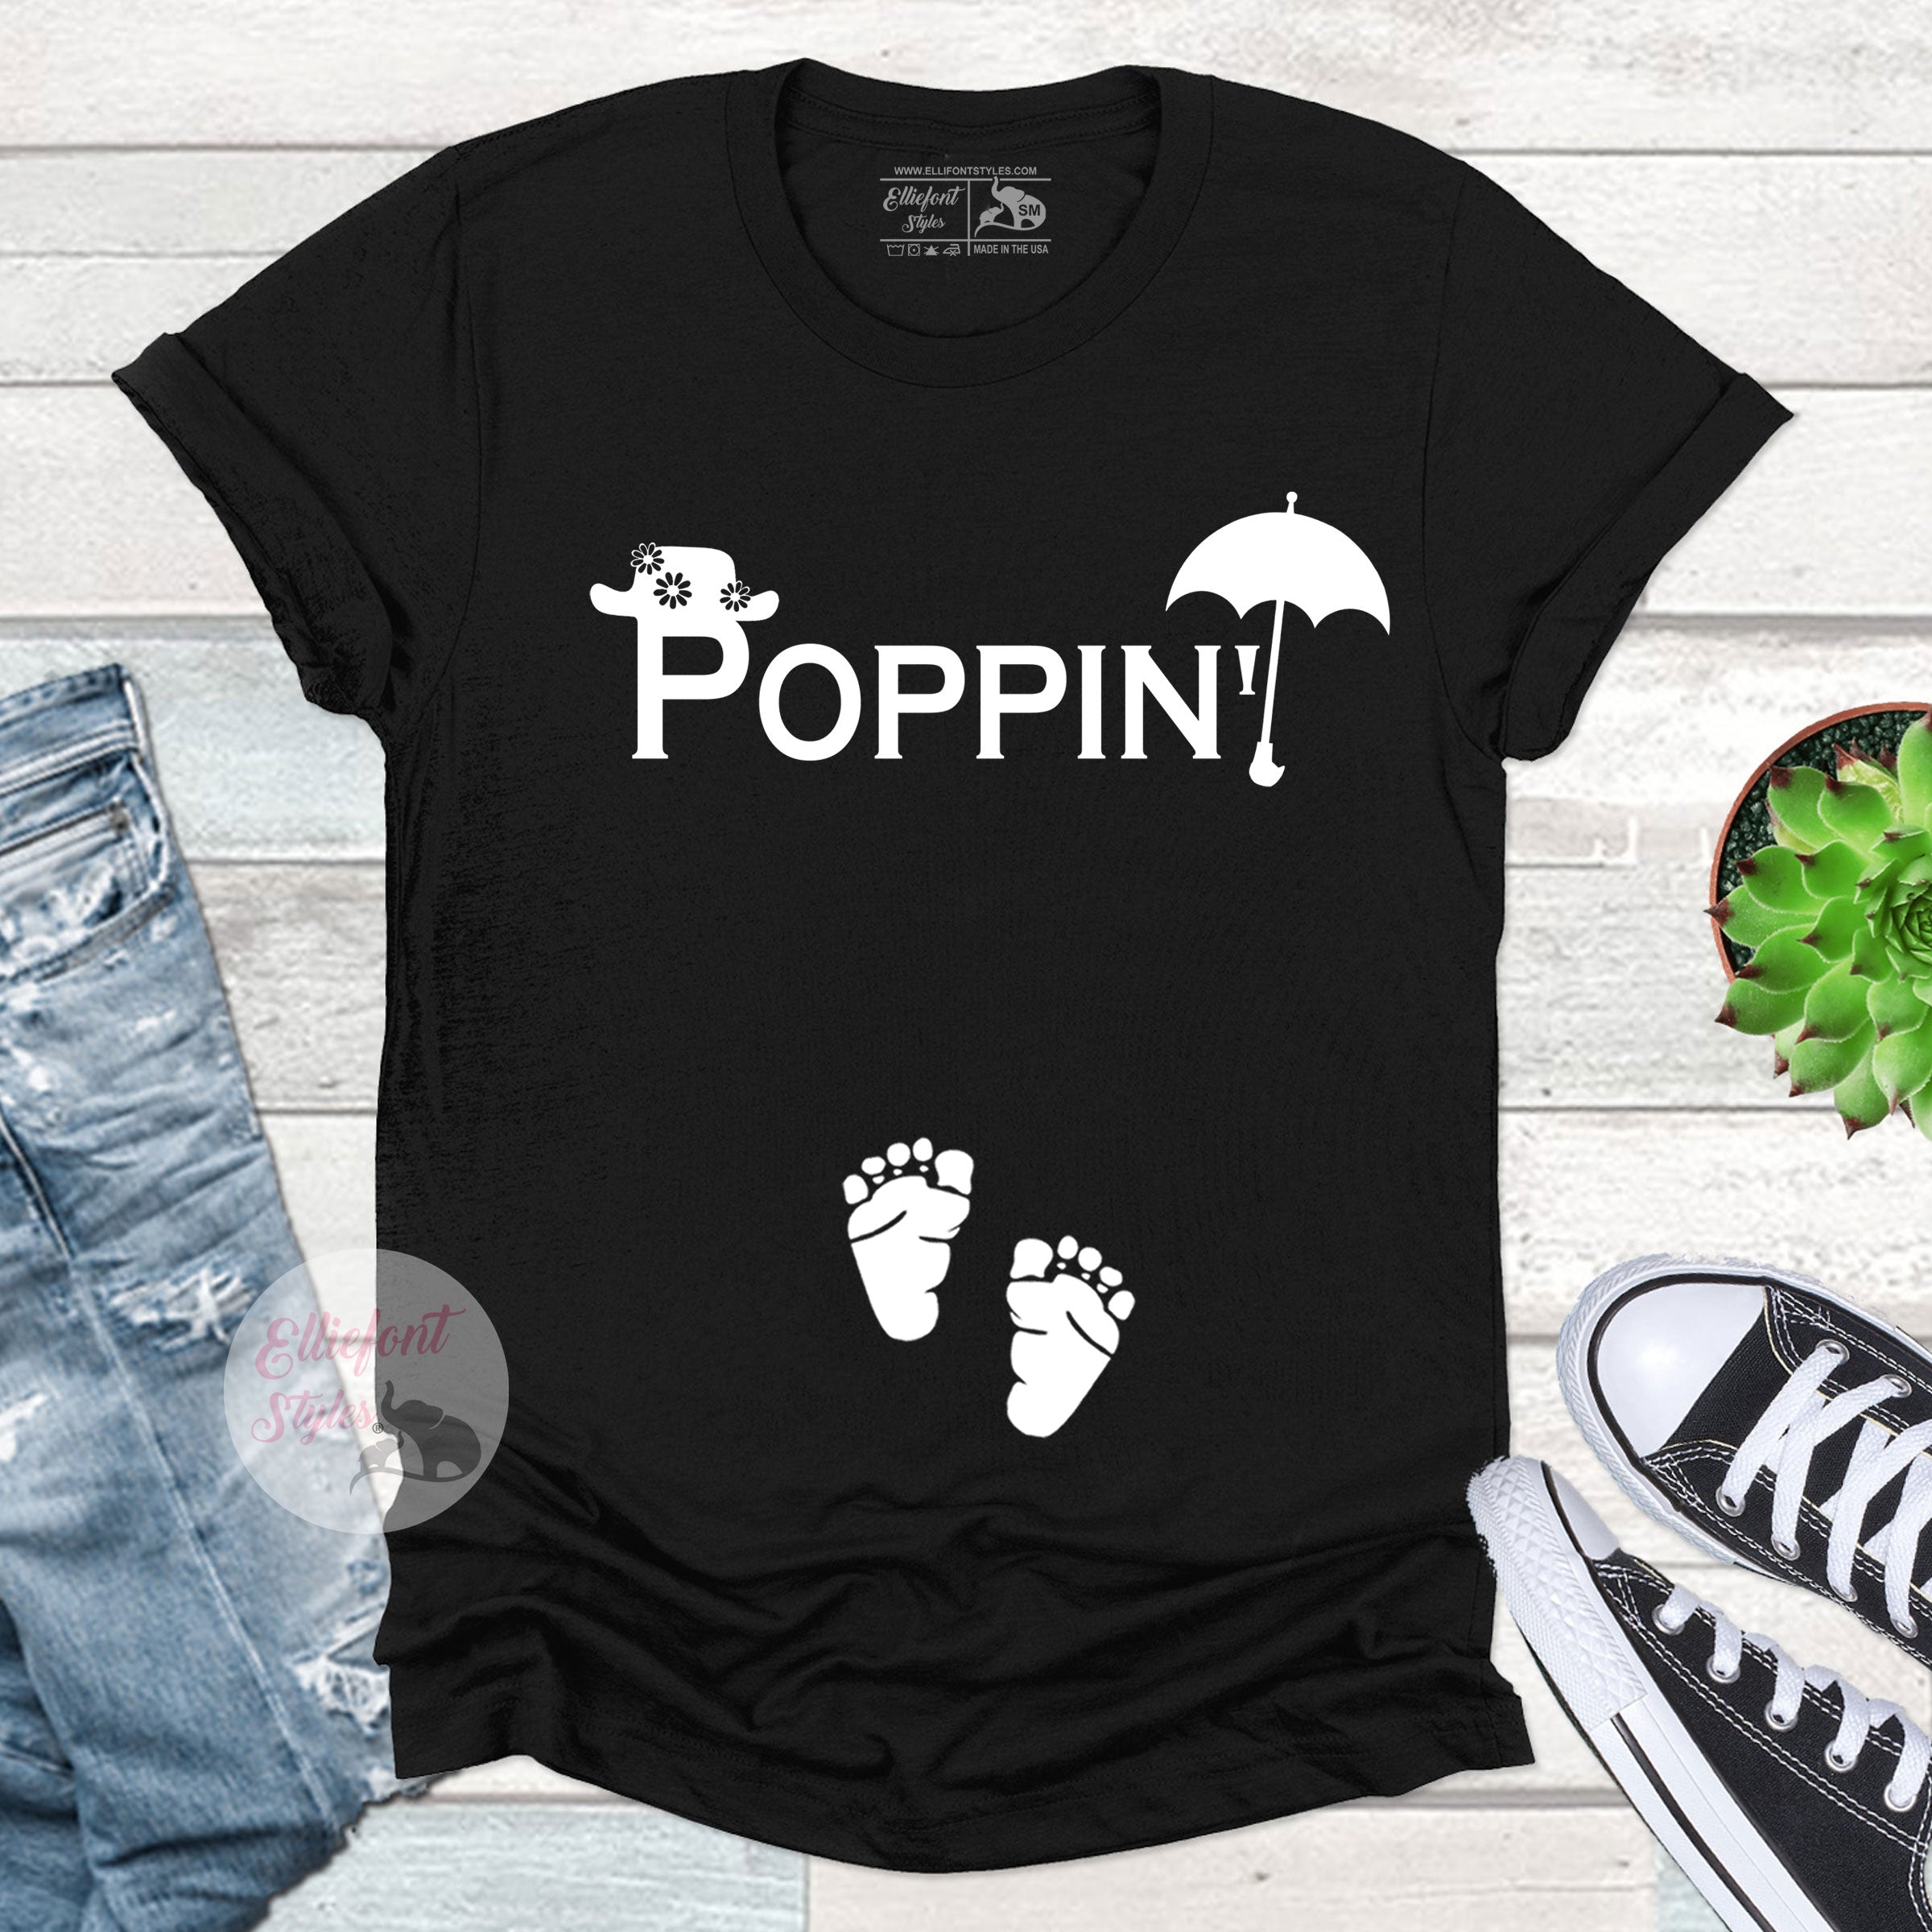 PopMalt Funny Pregnancy Announcement (Shirt)